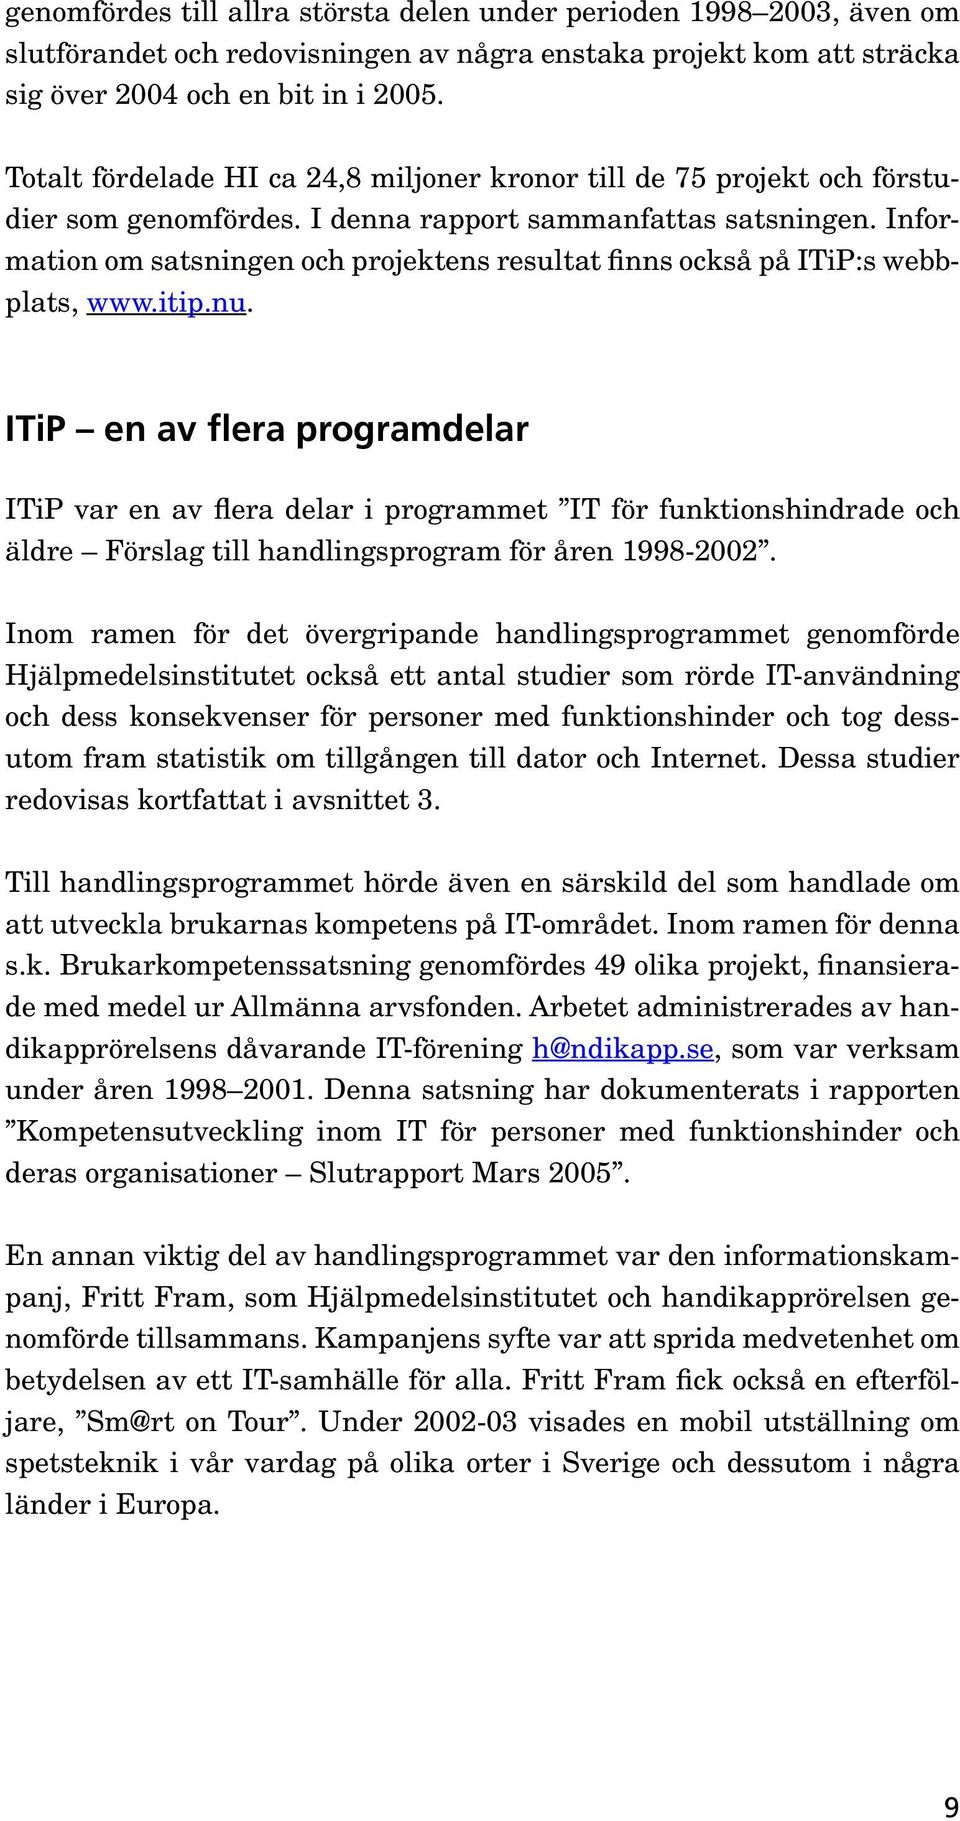 Information om satsningen och projektens resultat finns också på ITiP:s webbplats, www.itip.nu.